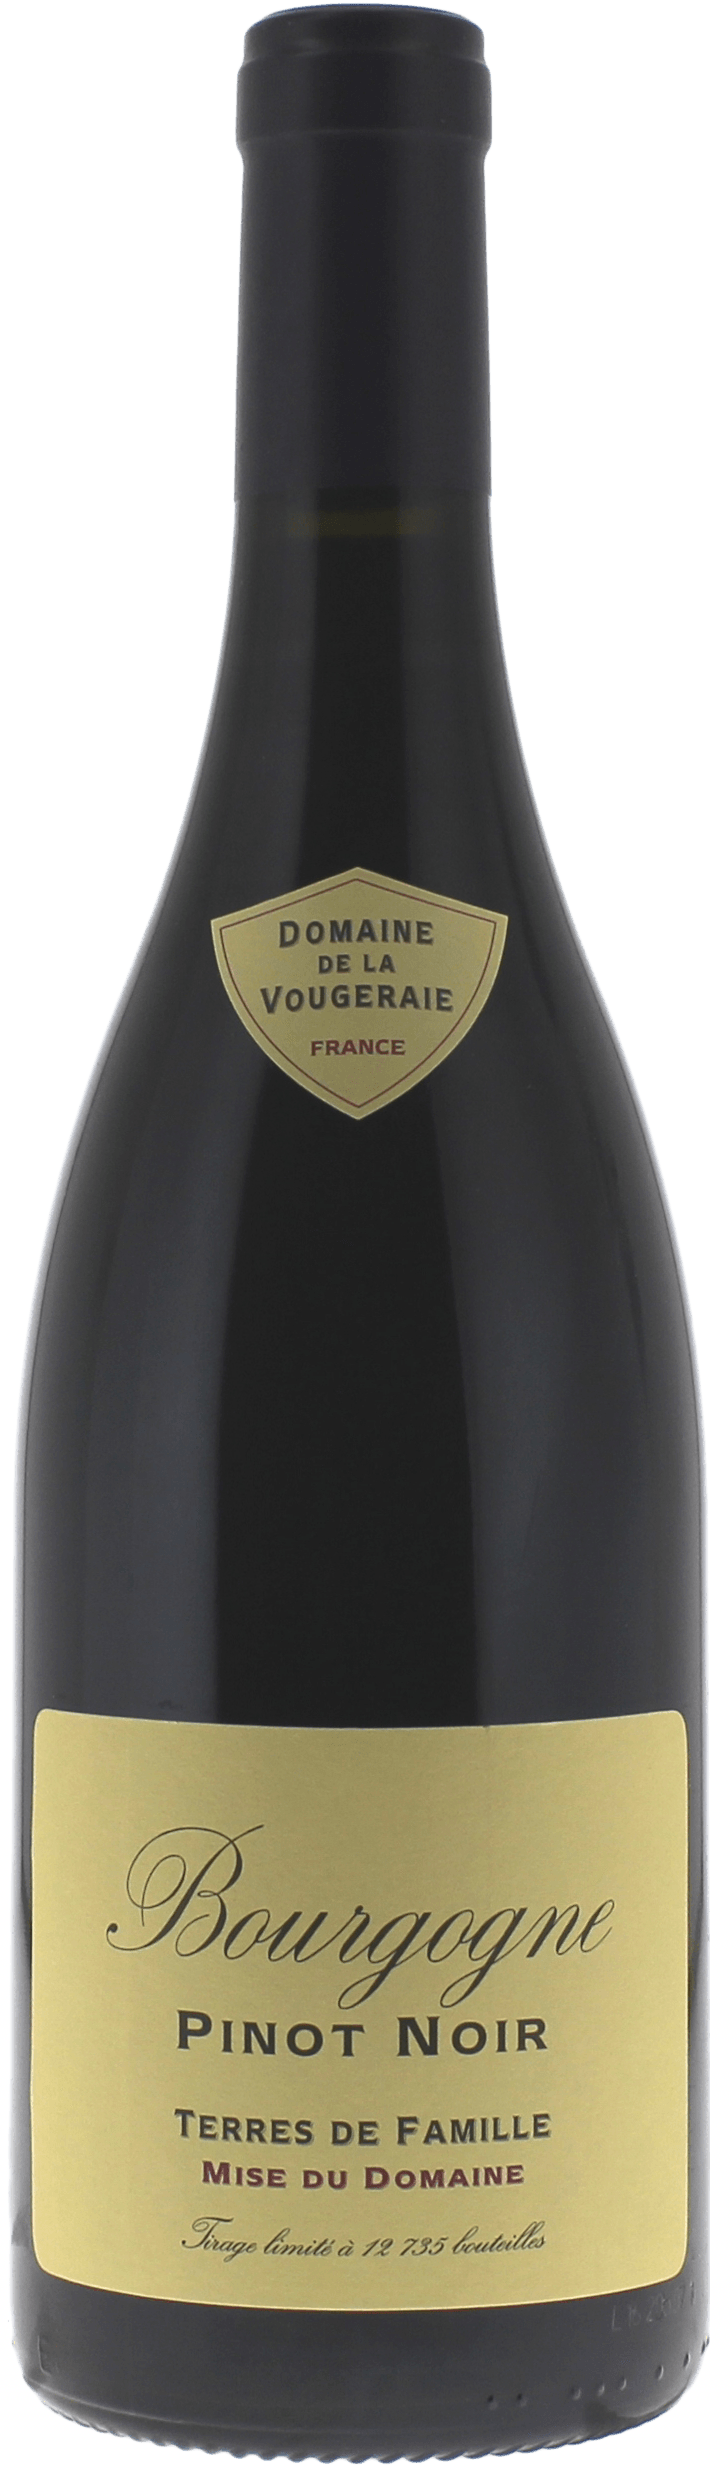 Bourgogne pinot noir terres de famille 2015 Domaine VOUGERAIE, Bourgogne rouge